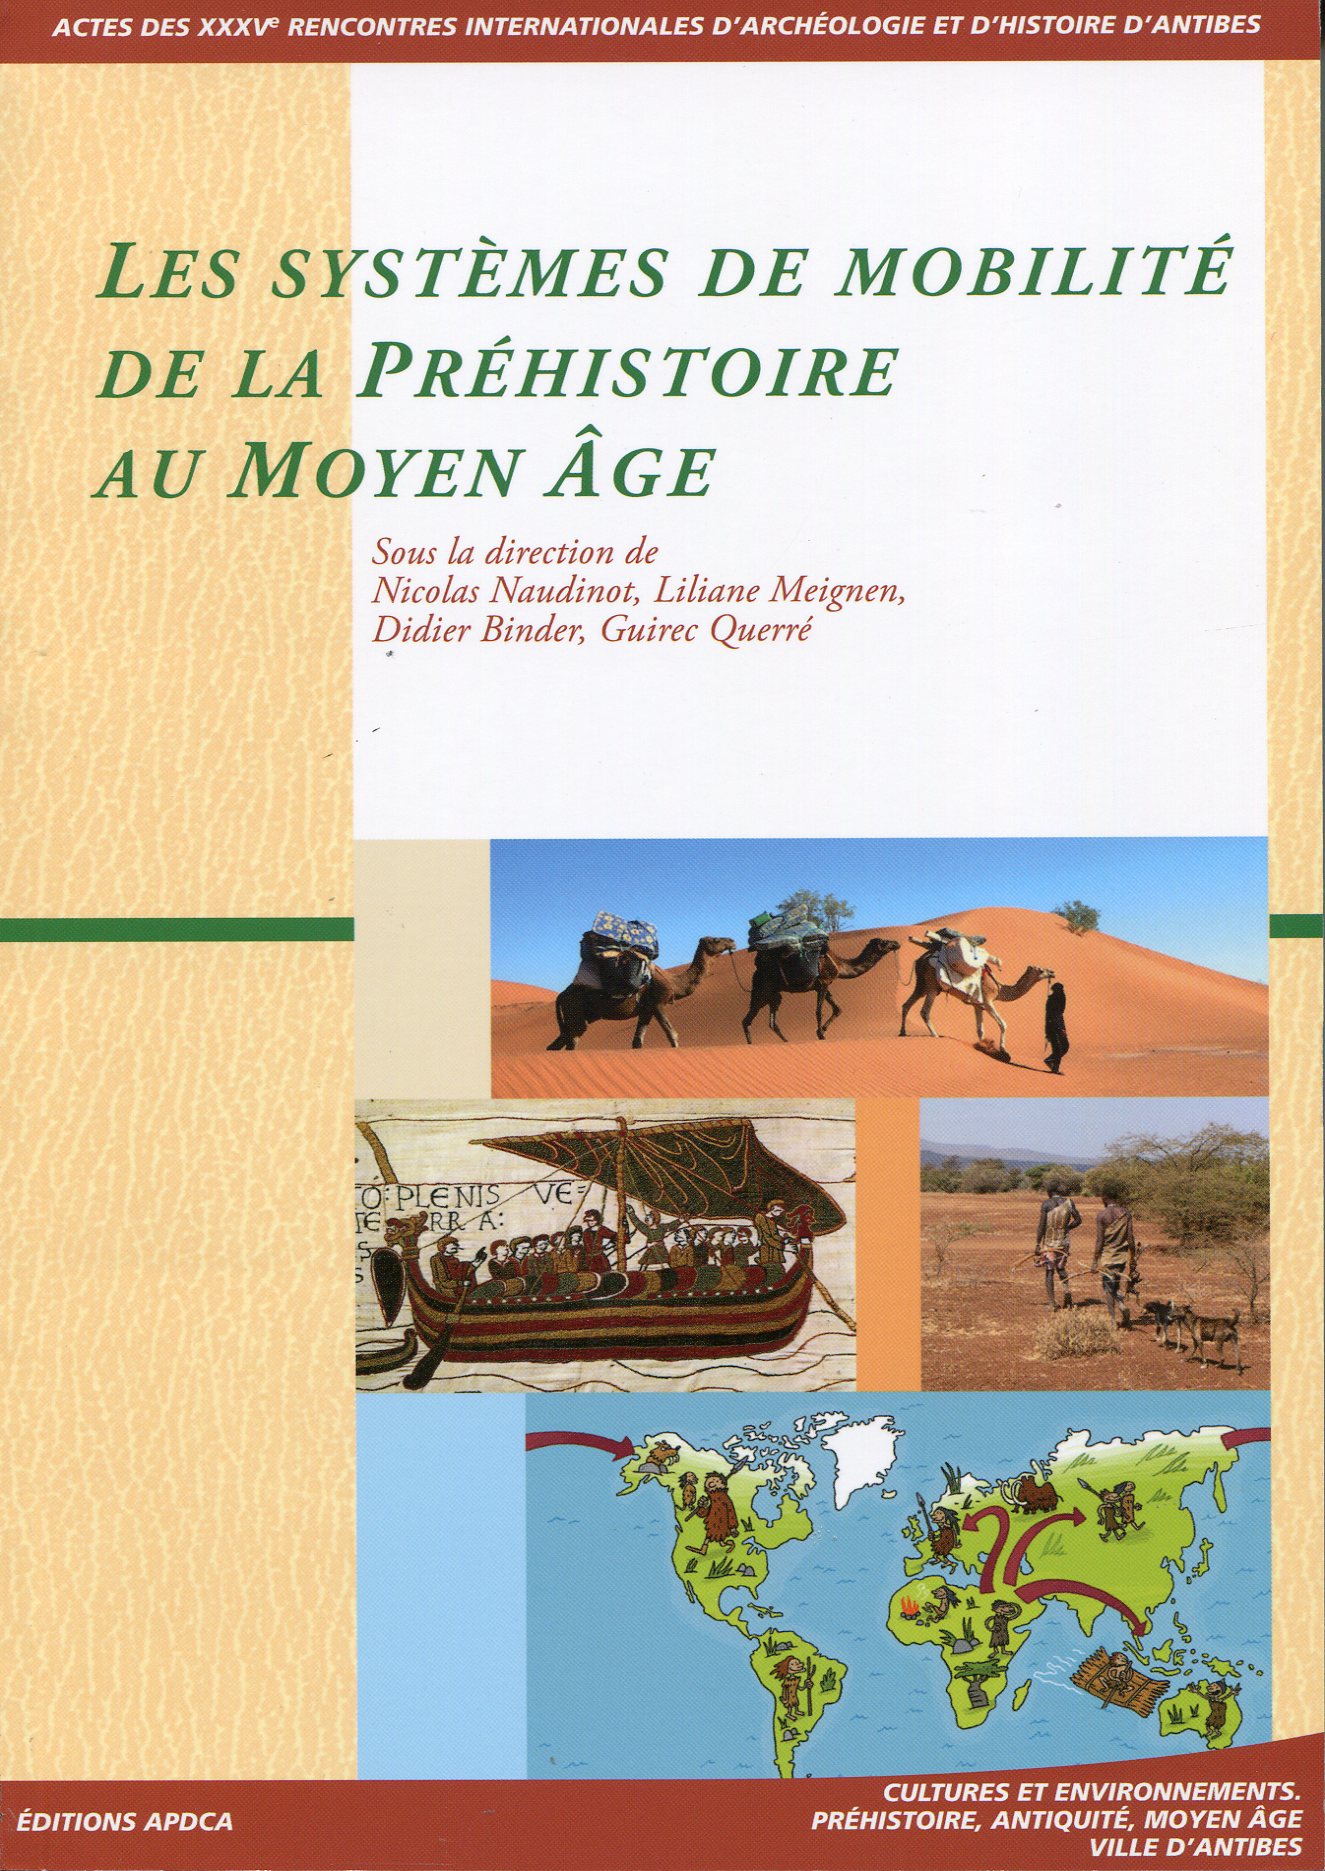 Les systèmes de mobilité de la Préhistoire au Moyen Age, (actes XXXVe rencontres internationales d'archéologie et d'histoire d'Antibes), 2015, 442 p.